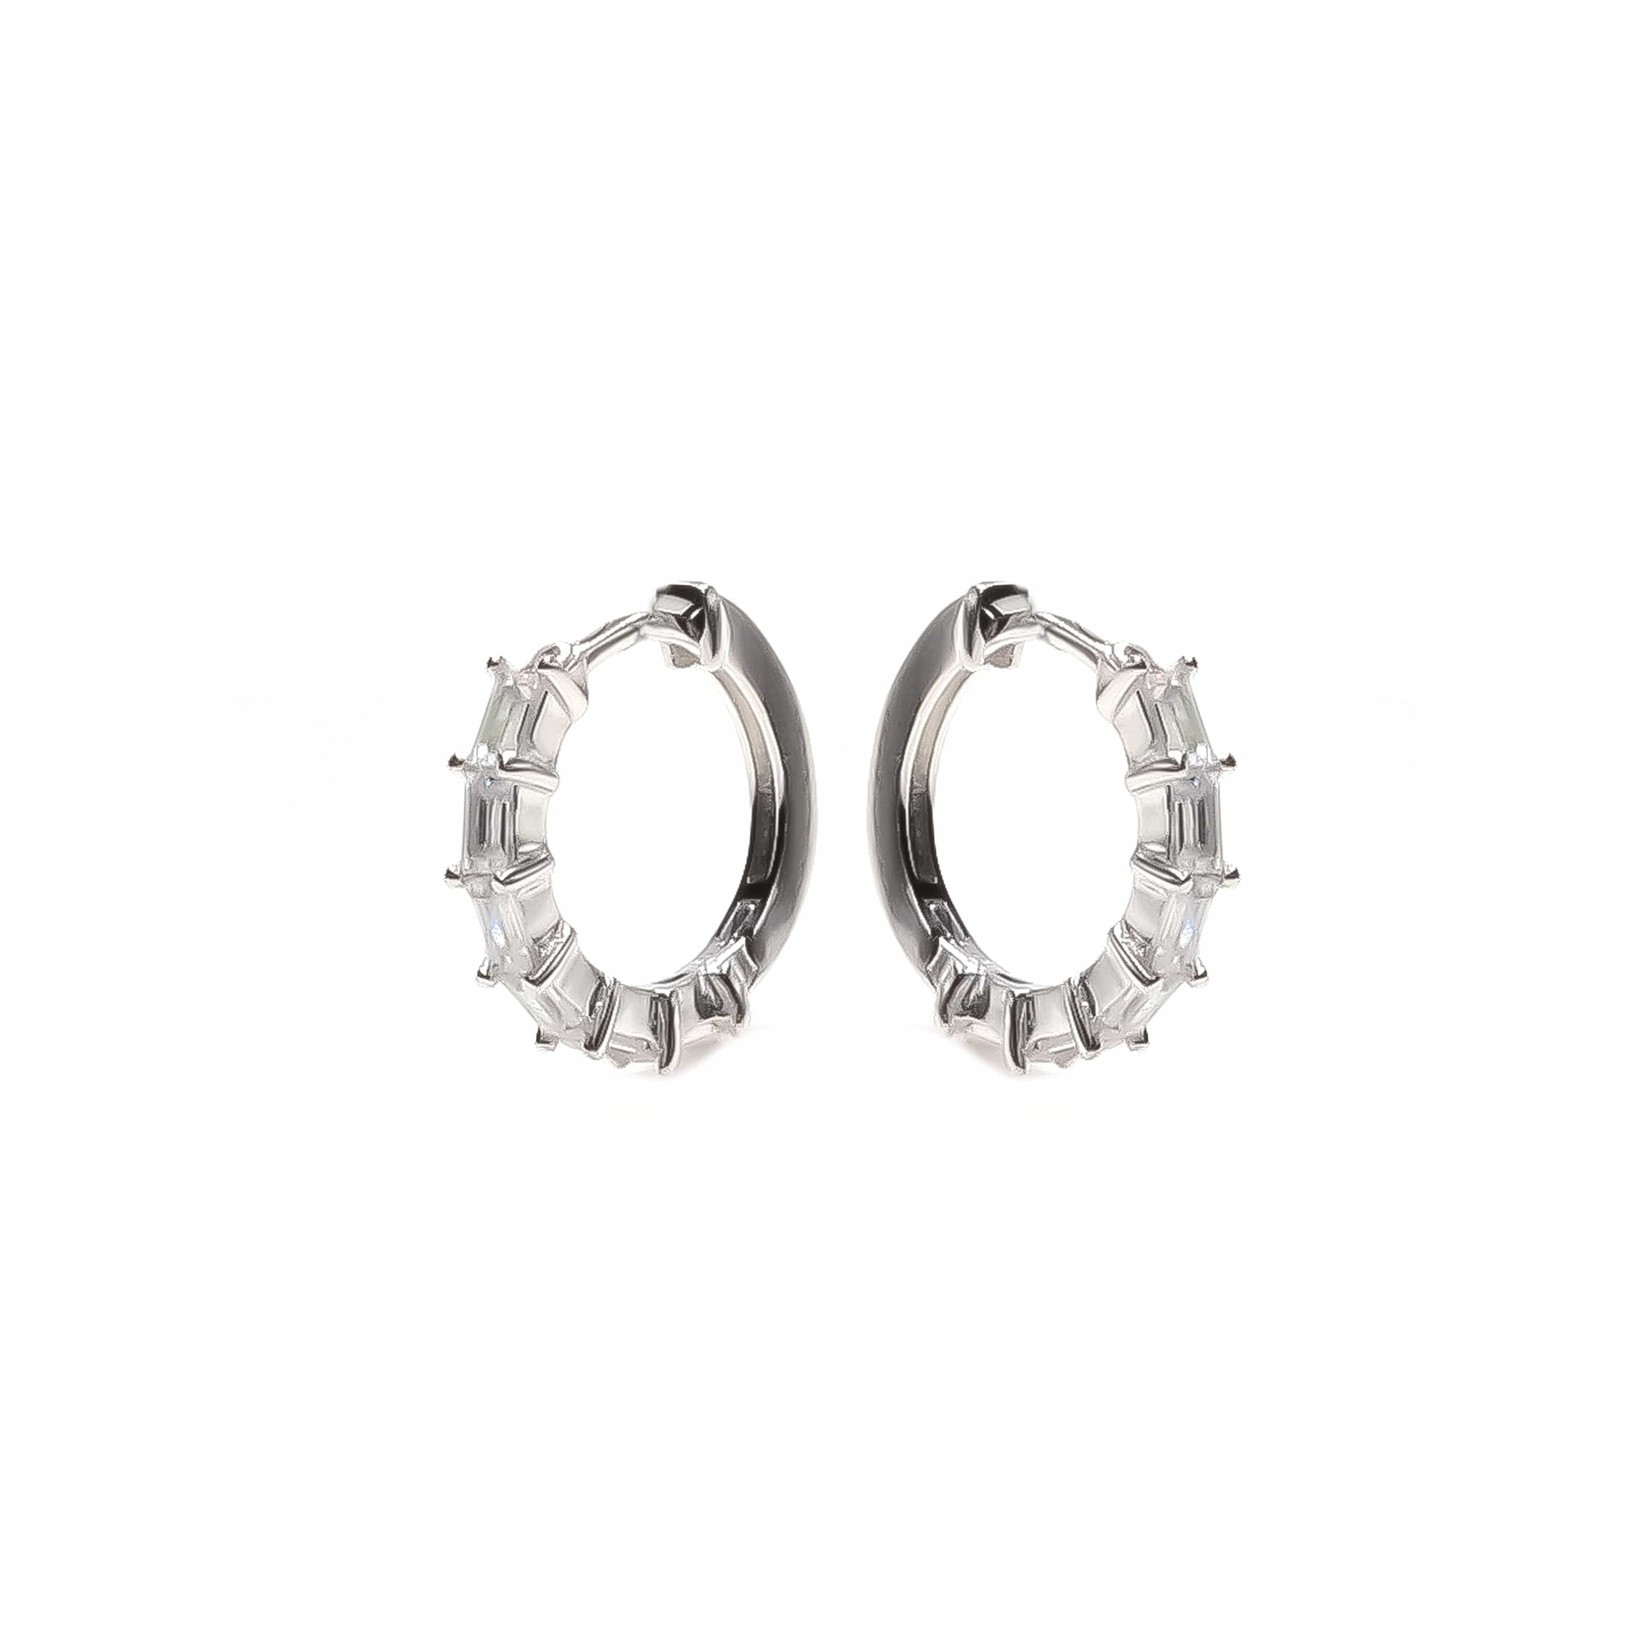 eLiasz and eLLa "Romantic" CZ Hoop Earrings in Silver